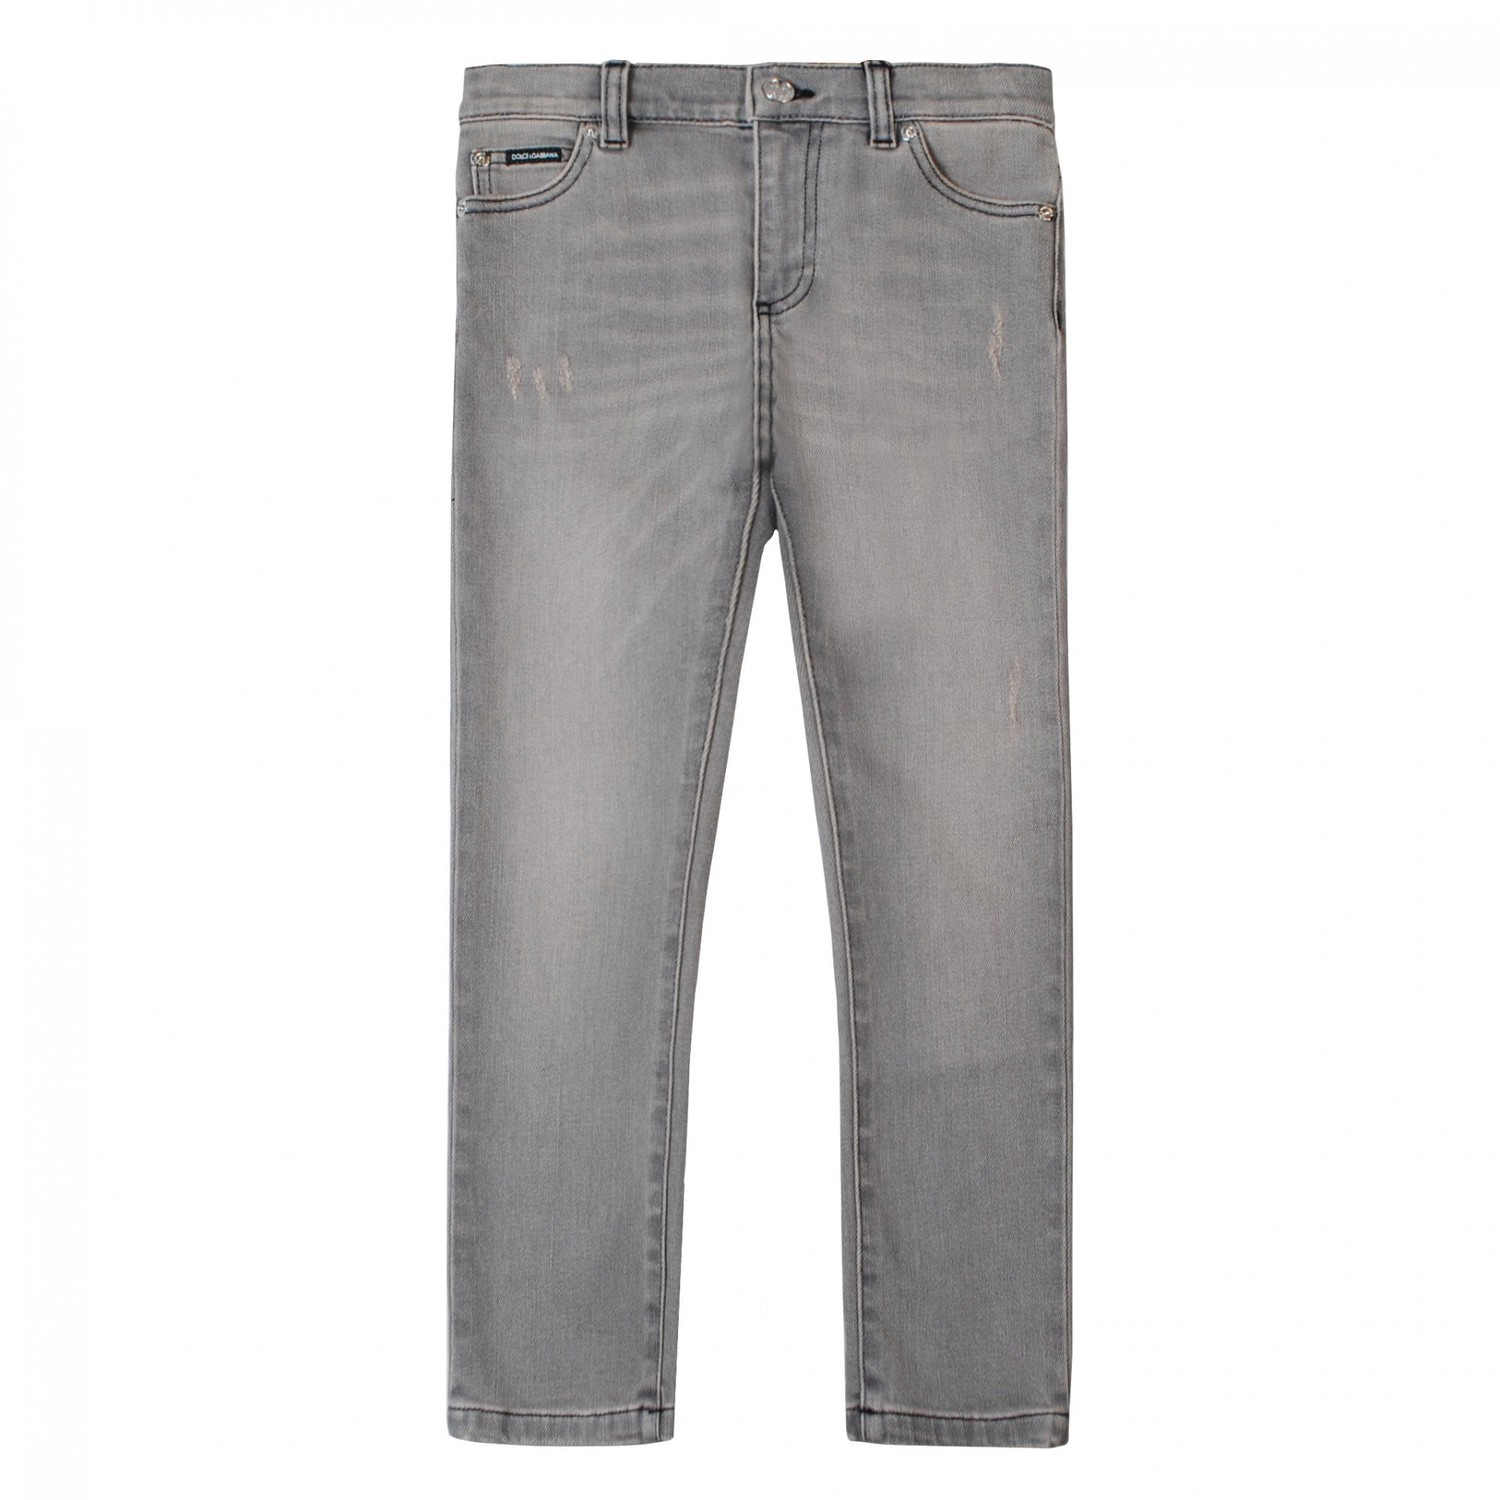 Dolce & Gabbana Boys Denim Jeans Grey 6Y